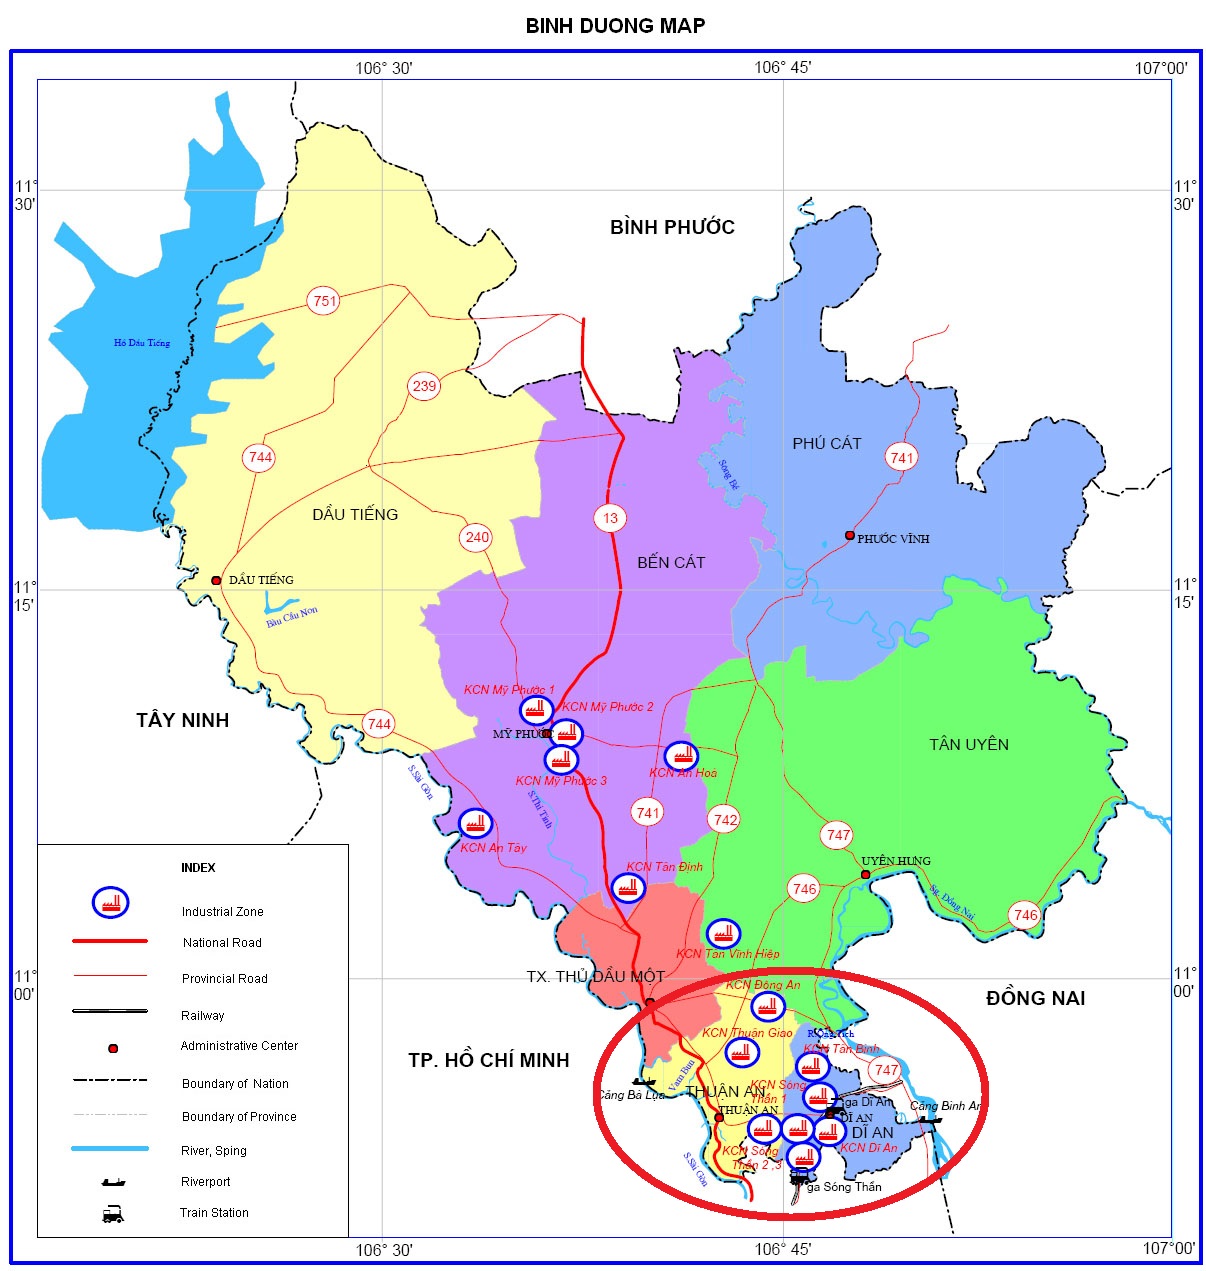       Quy Hoạch     Chính sách - Quy hoạch  02/09/2019 3:57 PM Bình Dương thông qua Nghị quyết thành lập 2 thành phố Thuận An và Dĩ An